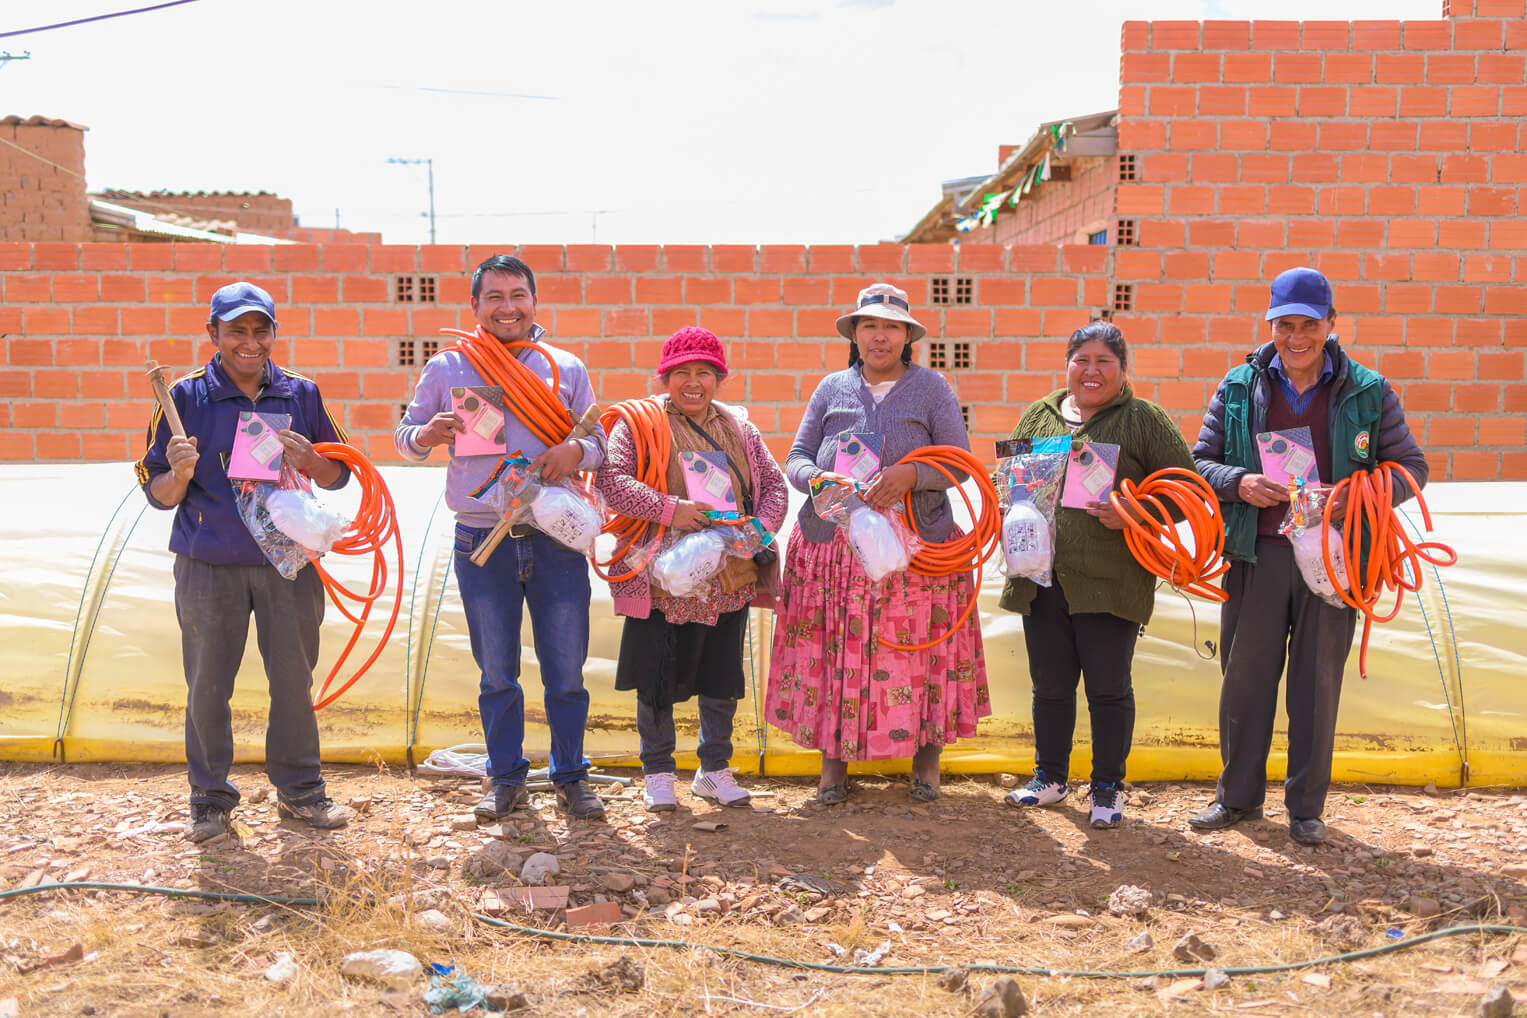 Proveímos a los residentes de El Alto con materiales y capacitación para cultivar micro-túneles en El Alto.